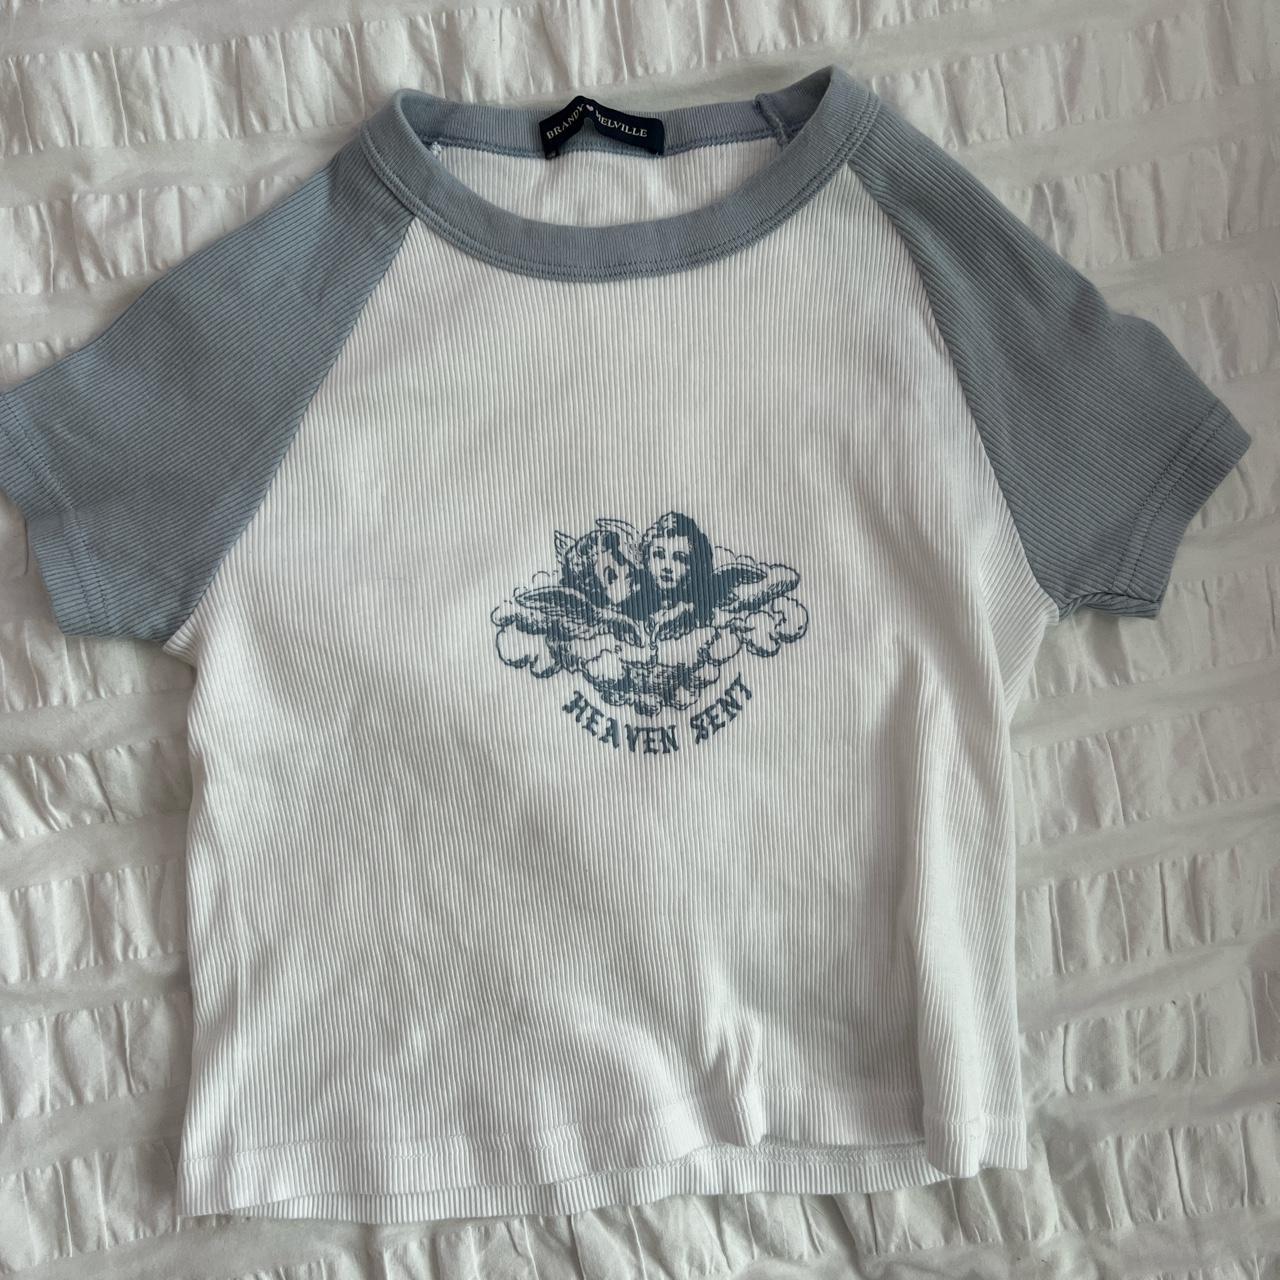 Brandy Melville blue heaven sent baby tee T-shirt - Depop